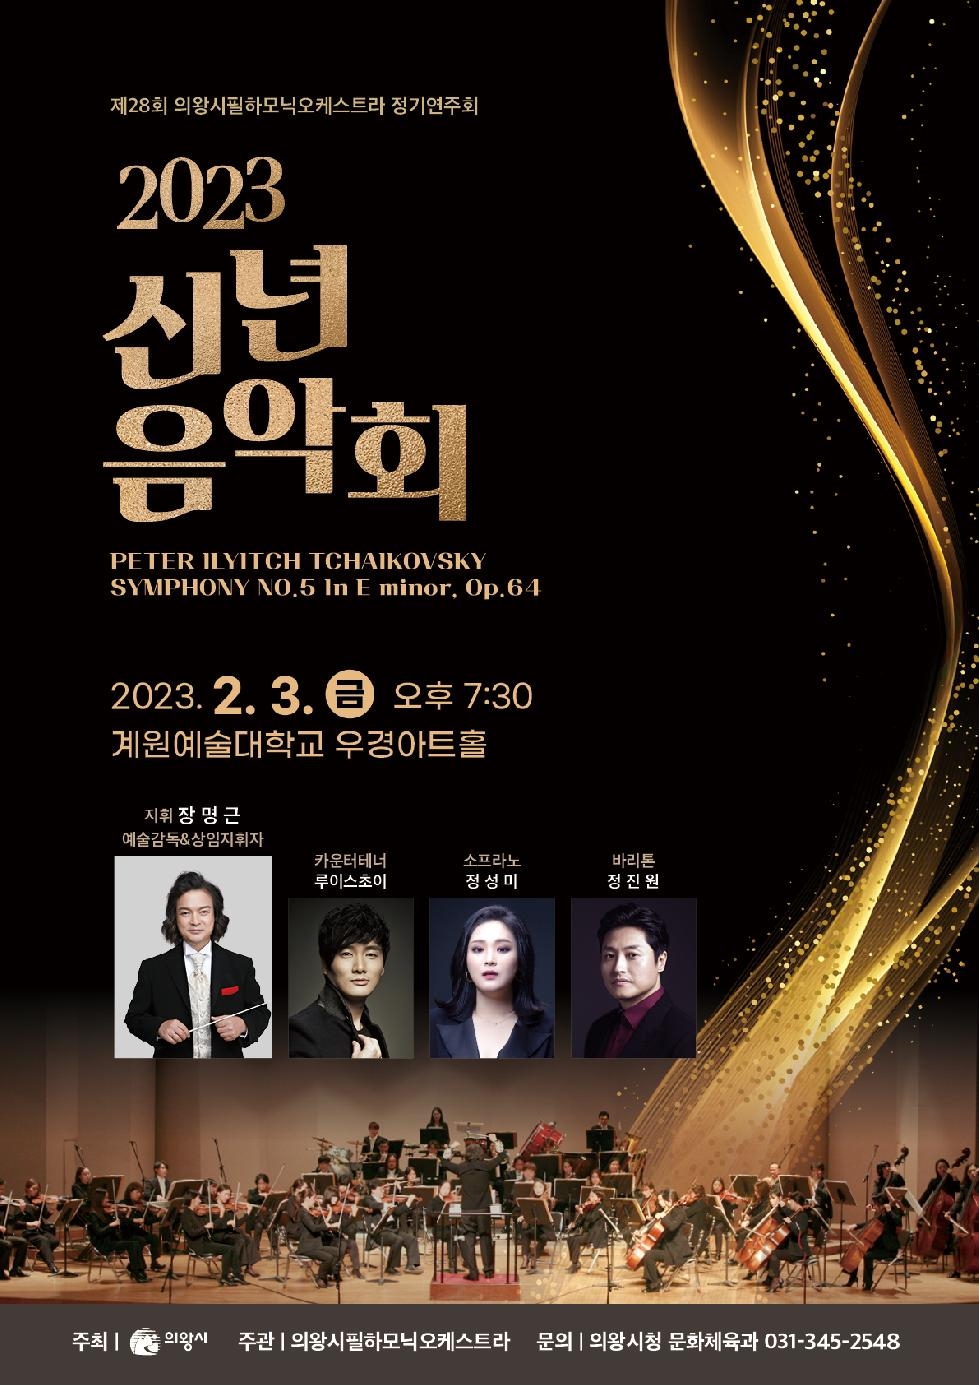 의왕시필하모닉오케스트라 ‘2023 신년음악회’개최